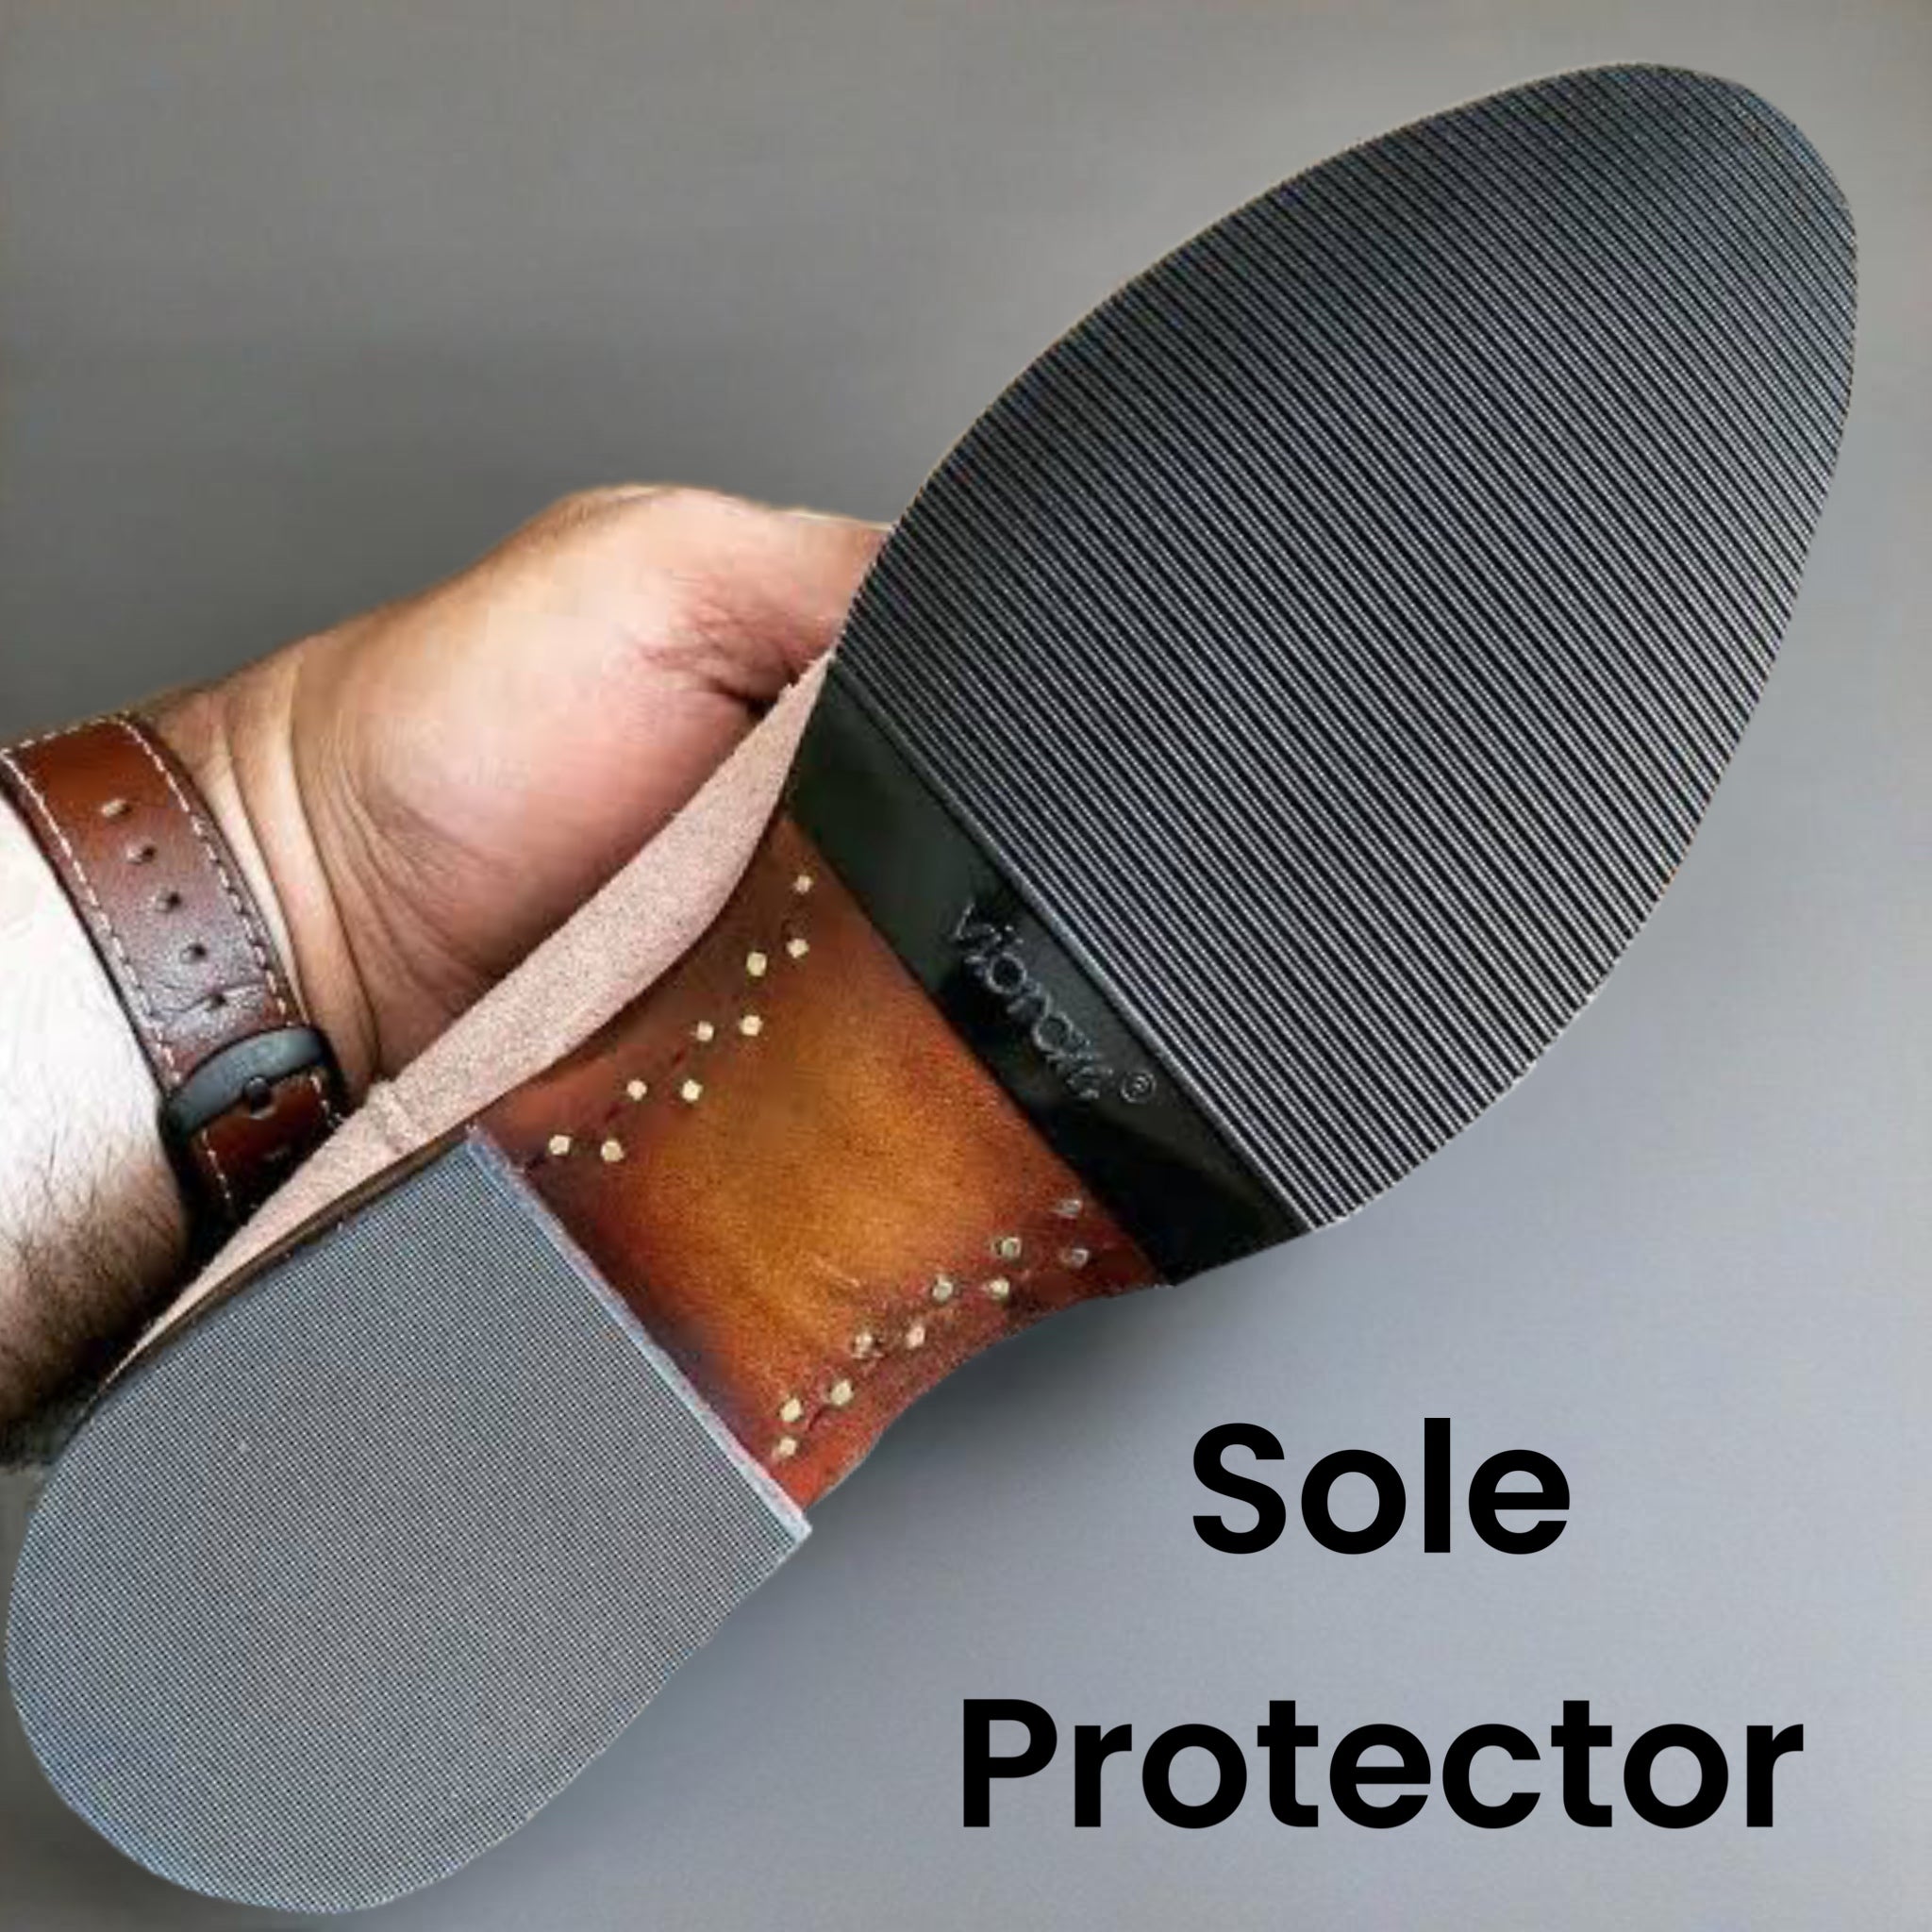 Sole Protector - Thin Vibram Rubber